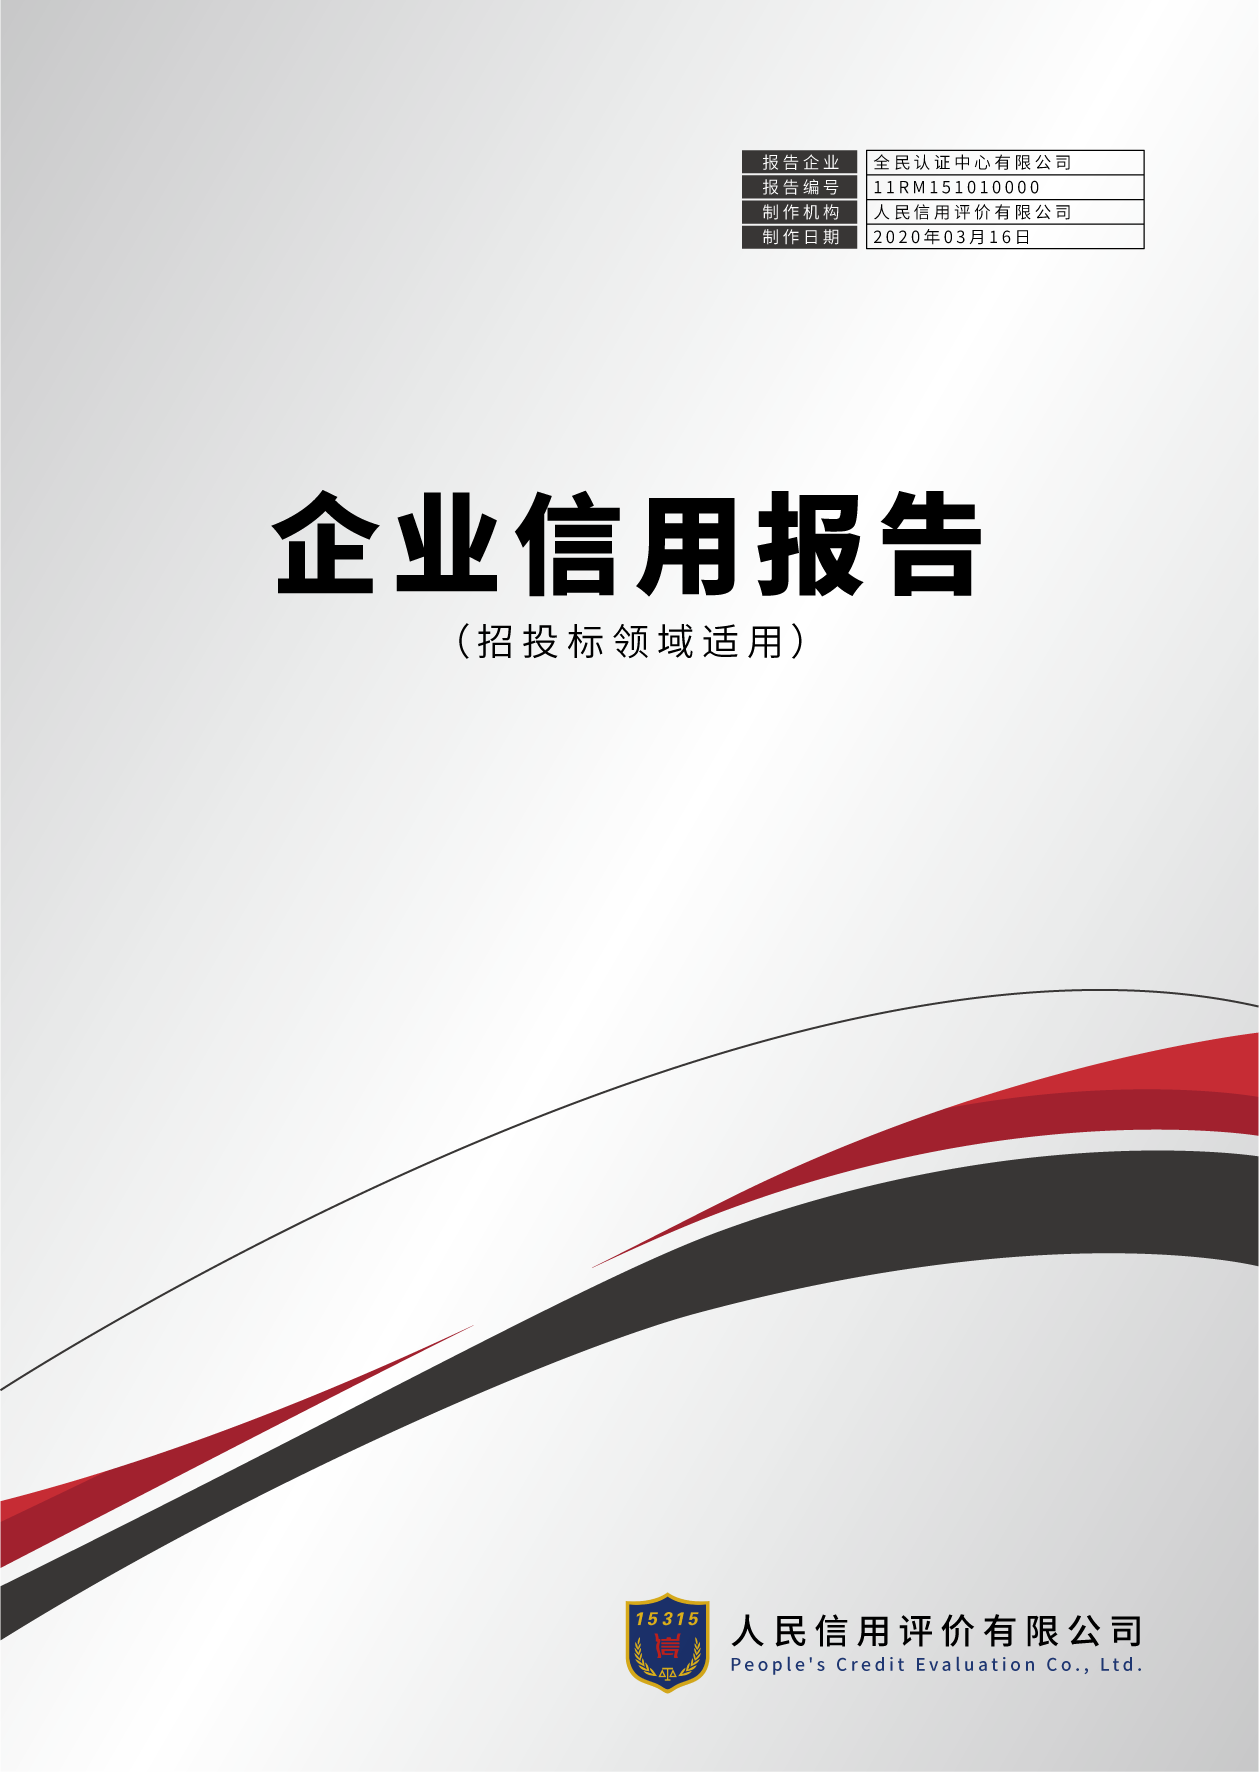 河南省第三方信用服务机构信用评级报告